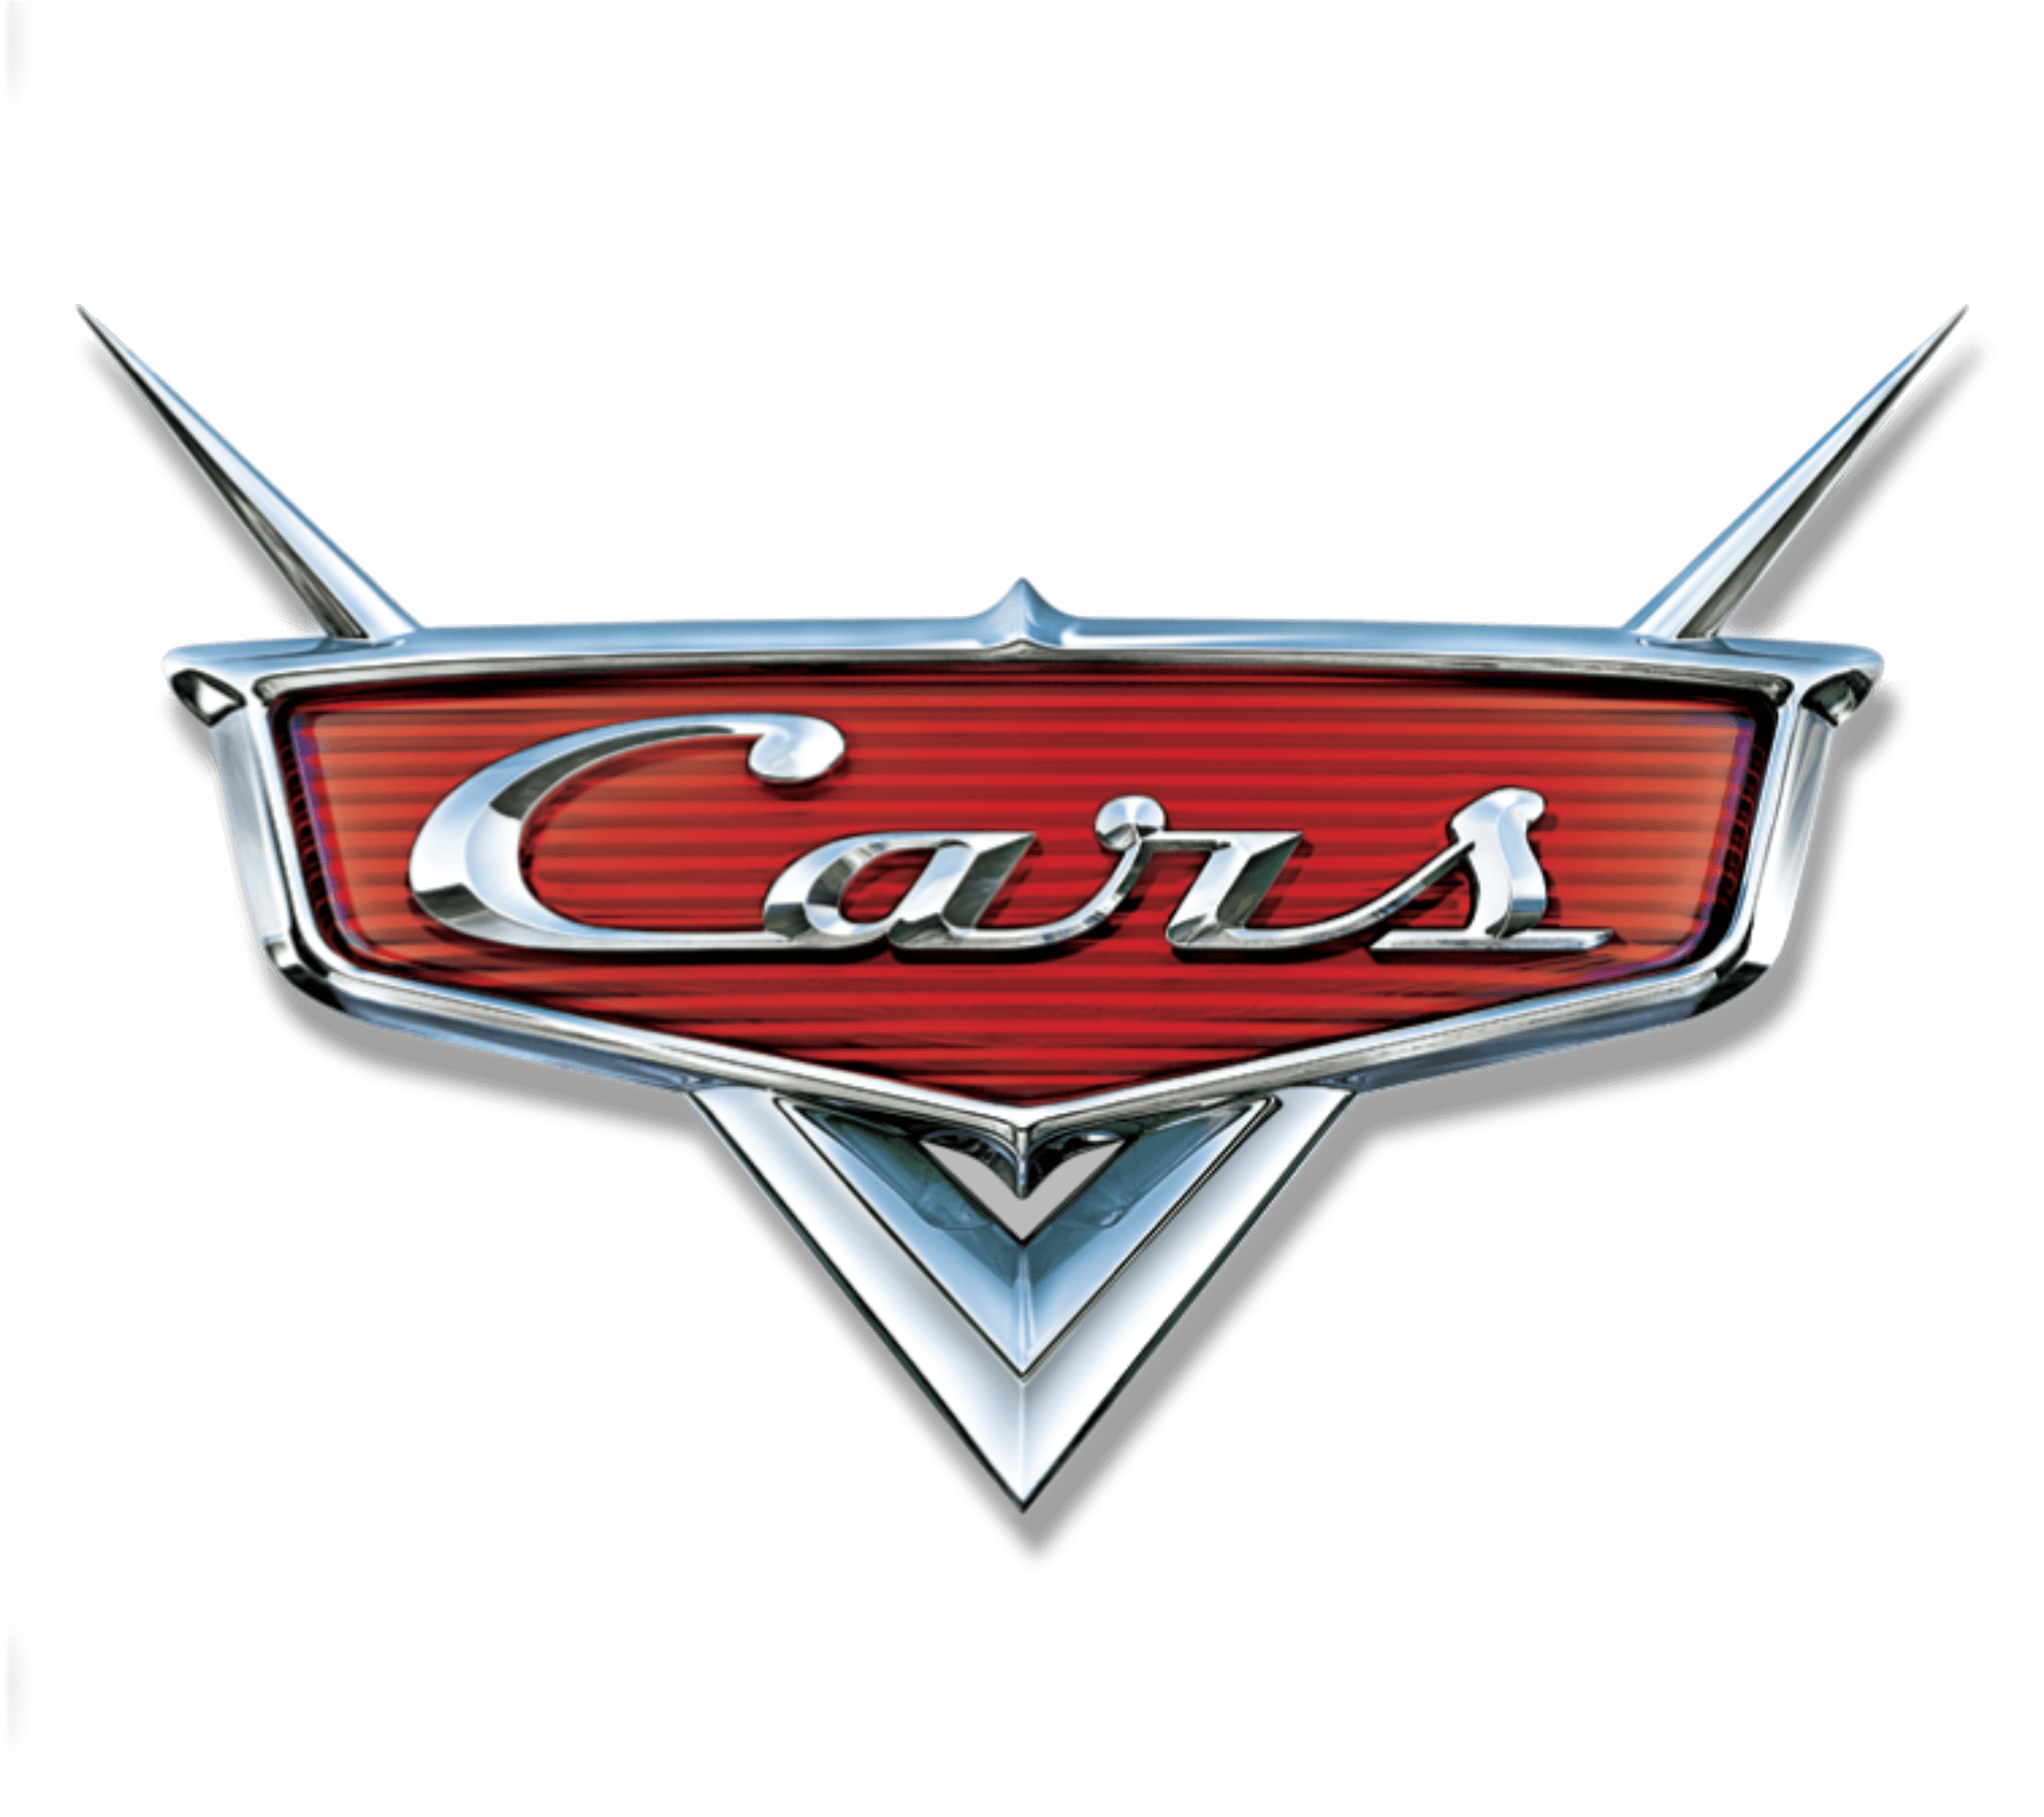 Disney Pixar Cars Logo - Disney and Pixar Cars Logo PNG Transparent & SVG Vector